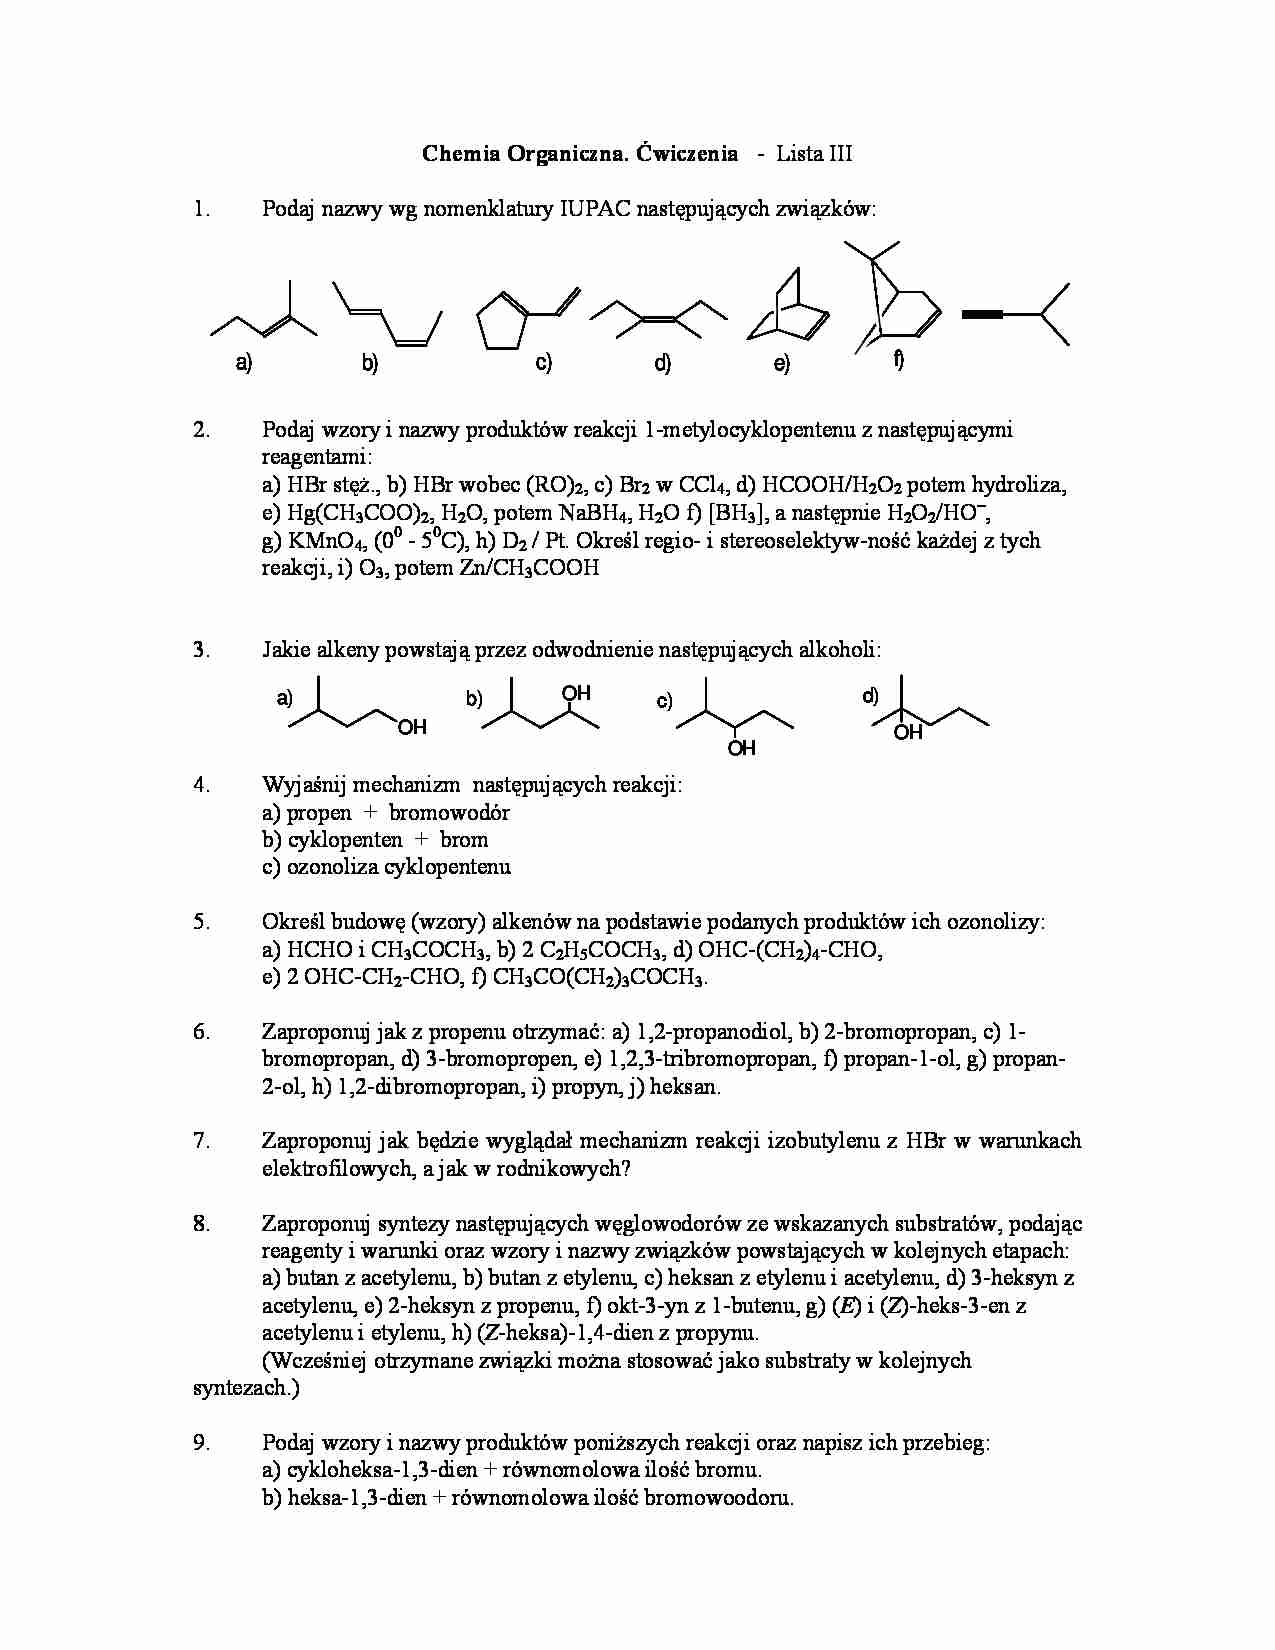 Chemia organiczna - ćwiczenia, lista III - strona 1